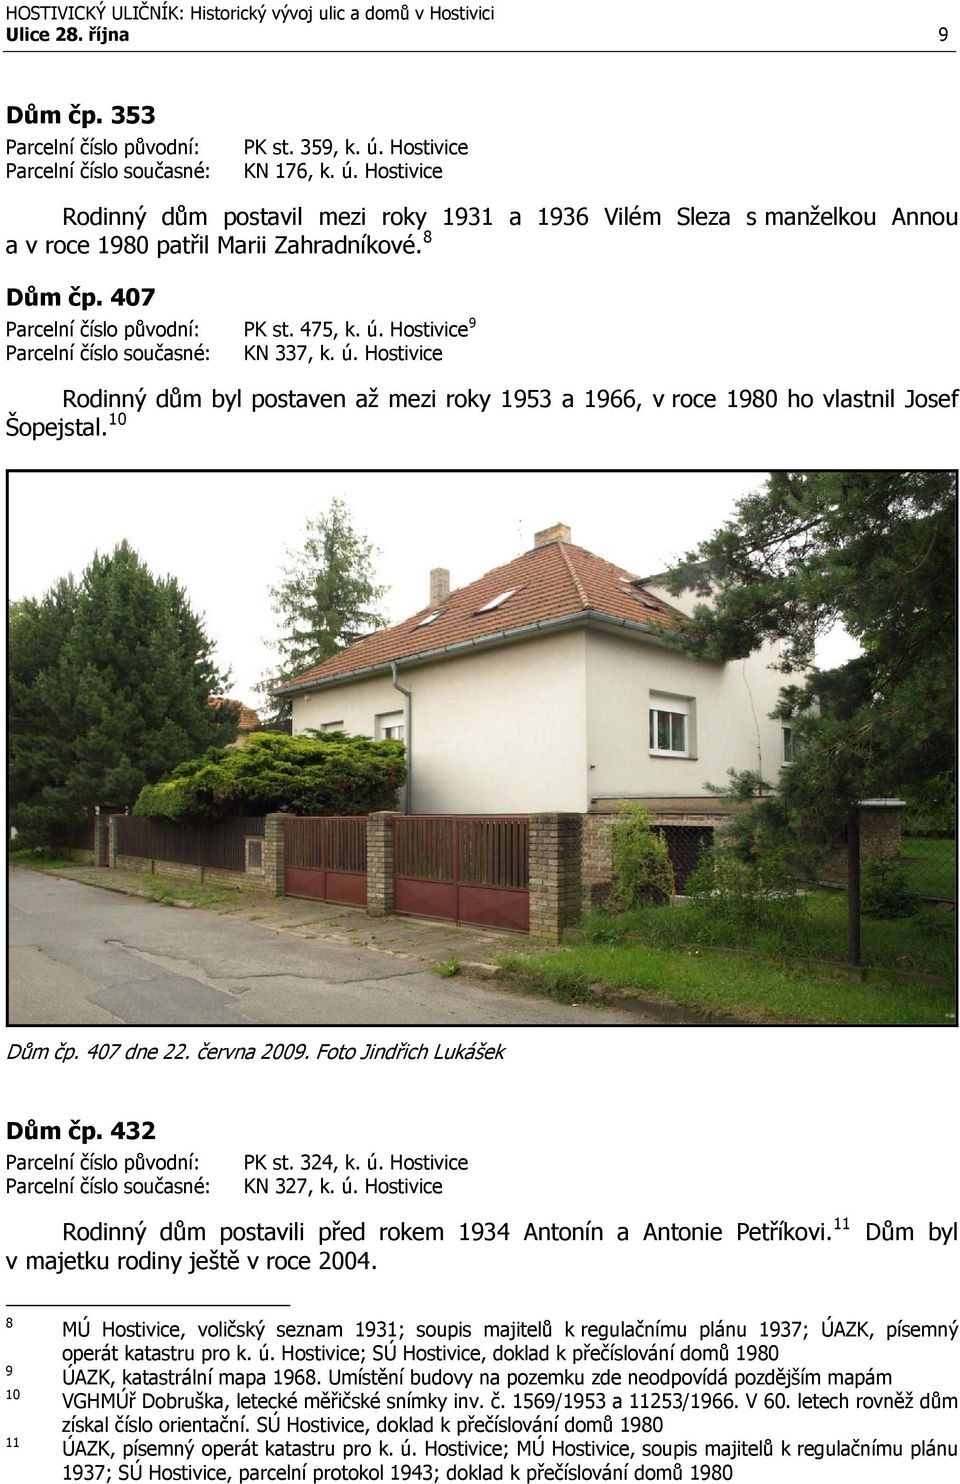 Foto Jindřich Lukášek Dům čp. 432 PK st. 324, k. ú. Hostivice KN 327, k. ú. Hostivice Rodinný dům postavili před rokem 1934 Antonín a Antonie Petříkovi. 11 v majetku rodiny ještě v roce 2004.